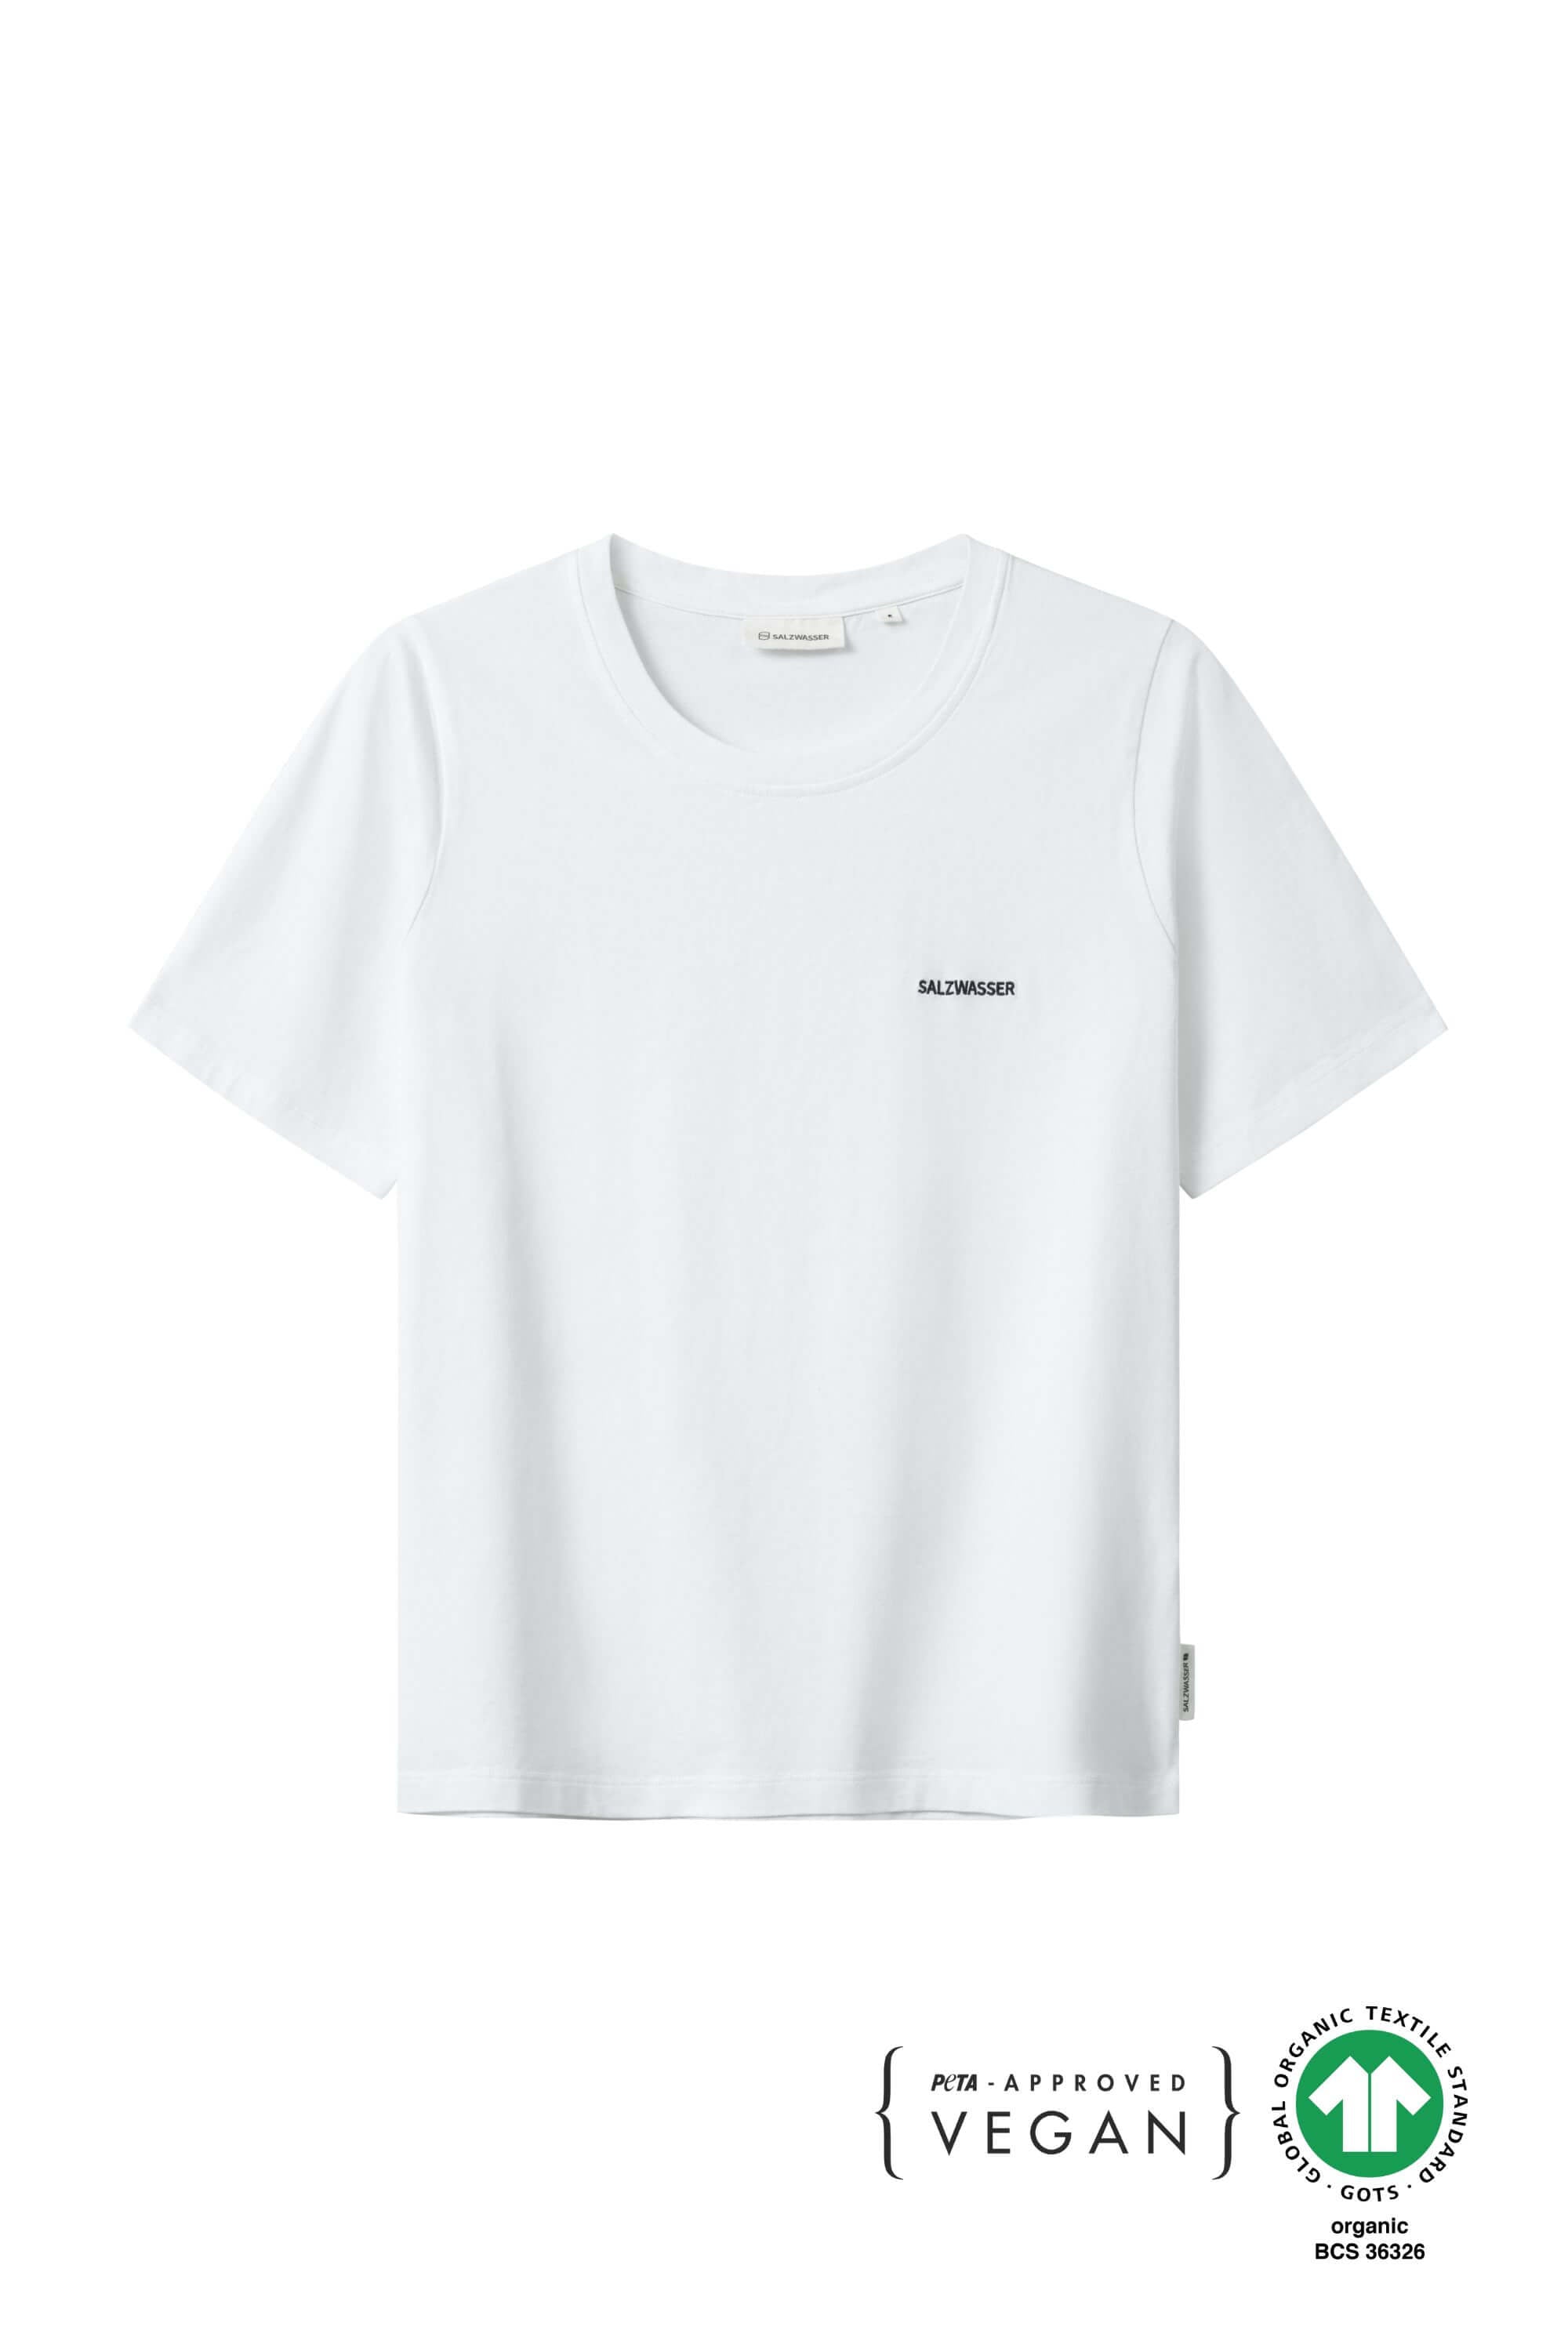 T-Shirt Lova Weiss aus Bio Baumwolle von Salzwasser